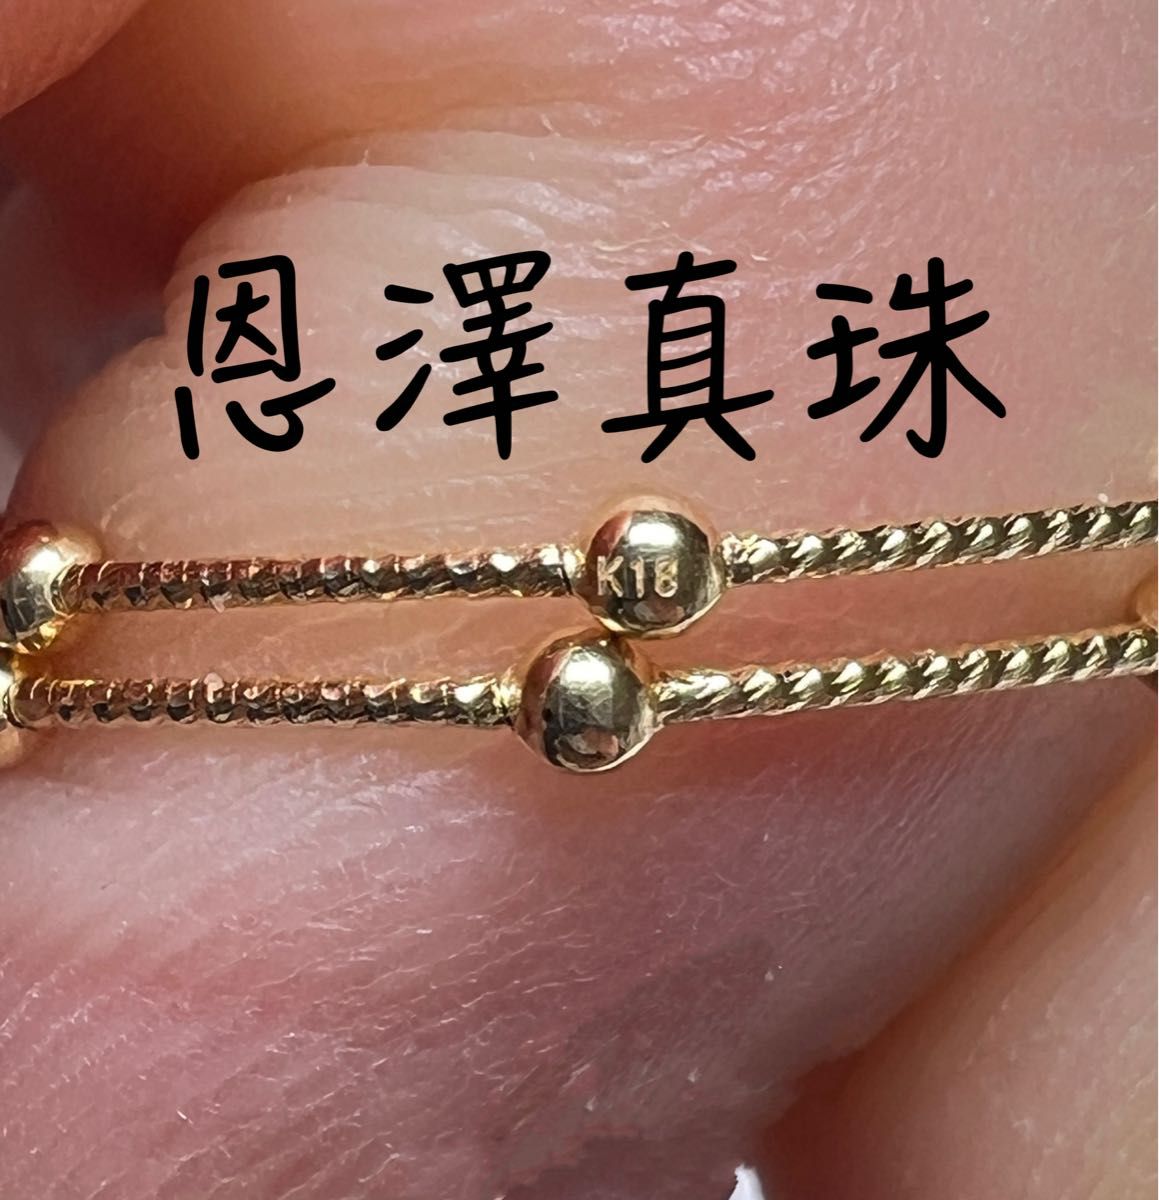 伊勢志摩英虞湾産 越物あこや真珠 超稀少色ホワイトローズピンク7.0〜7.5mm